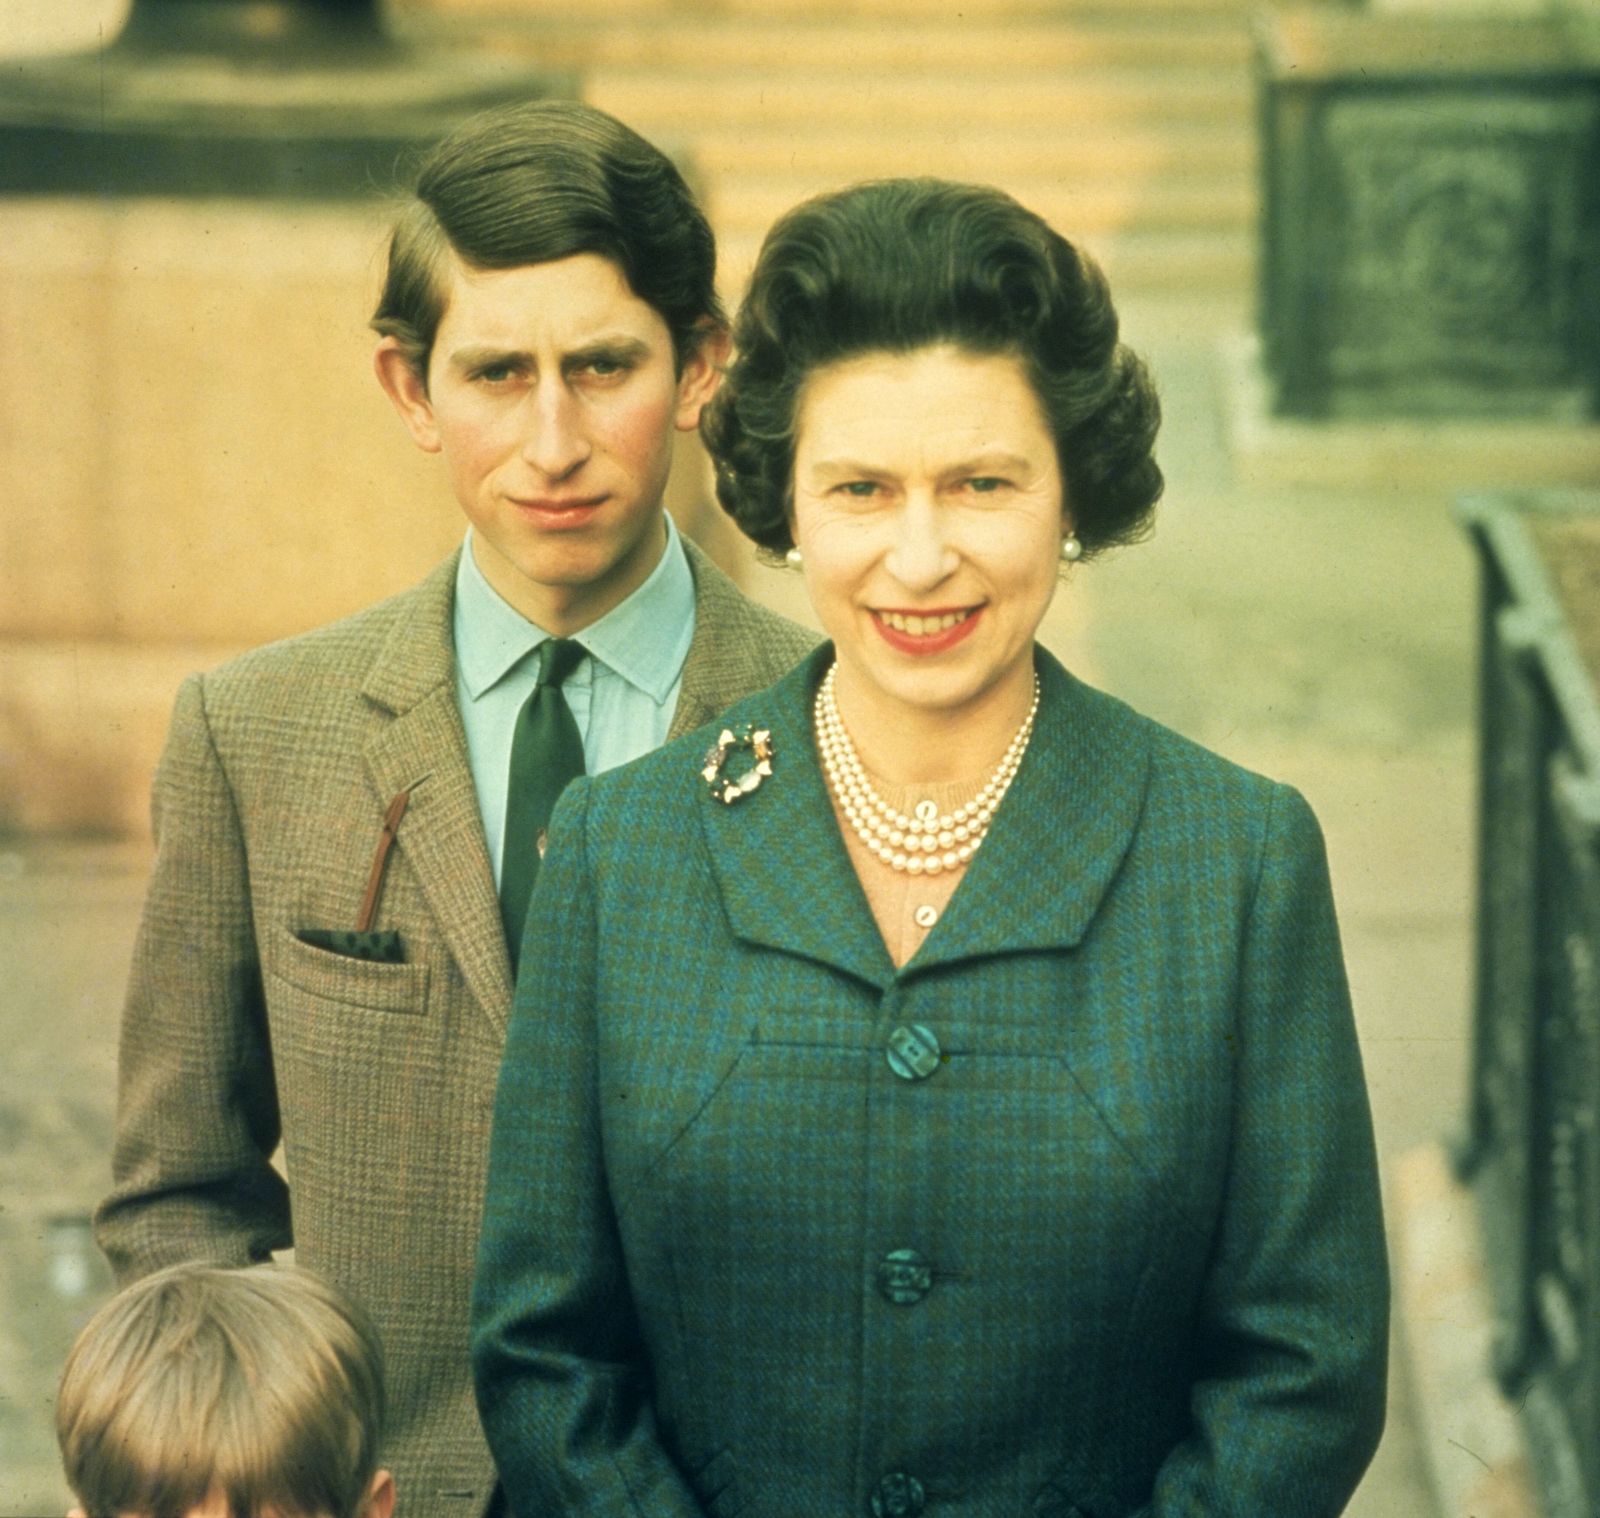 Nữ hoàng Elizabeth II với con trai lớn, Thái tử Charles, vào năm 1969. Charles là người được chỉ định thừa kế ngai vàng từ năm 3 tuổi.